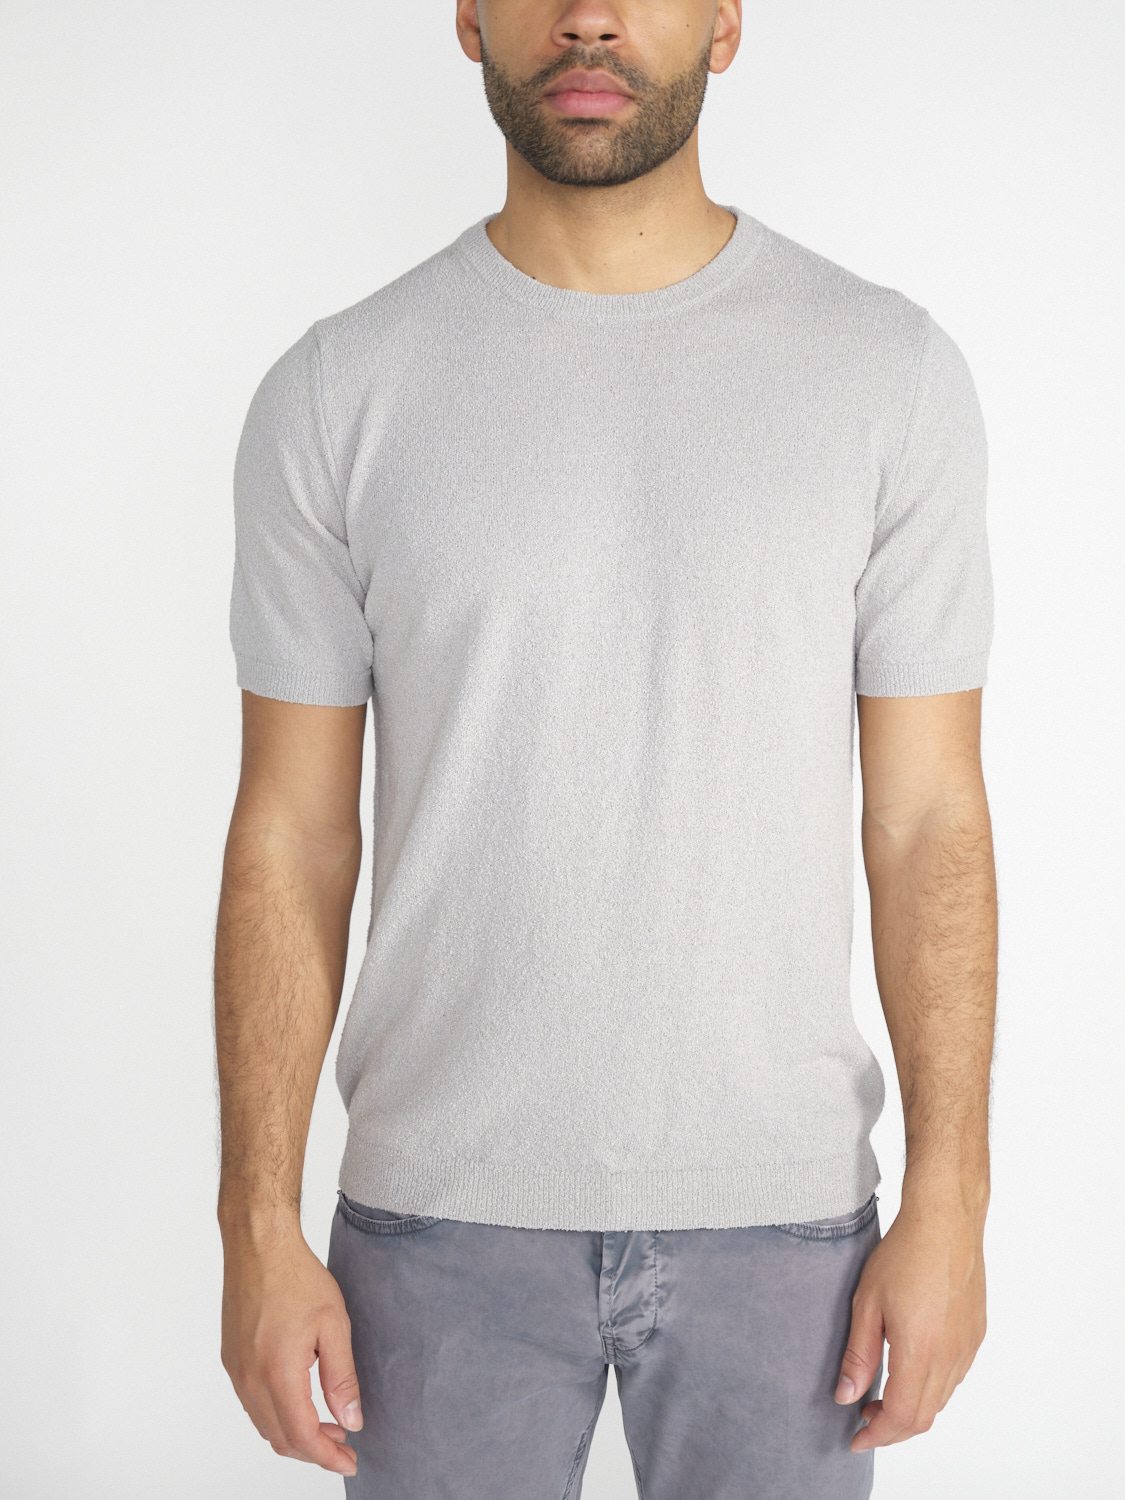 Stefan Brandt Eli 30 – Crew Neck T-Shirt aus Baumwolle grau XL